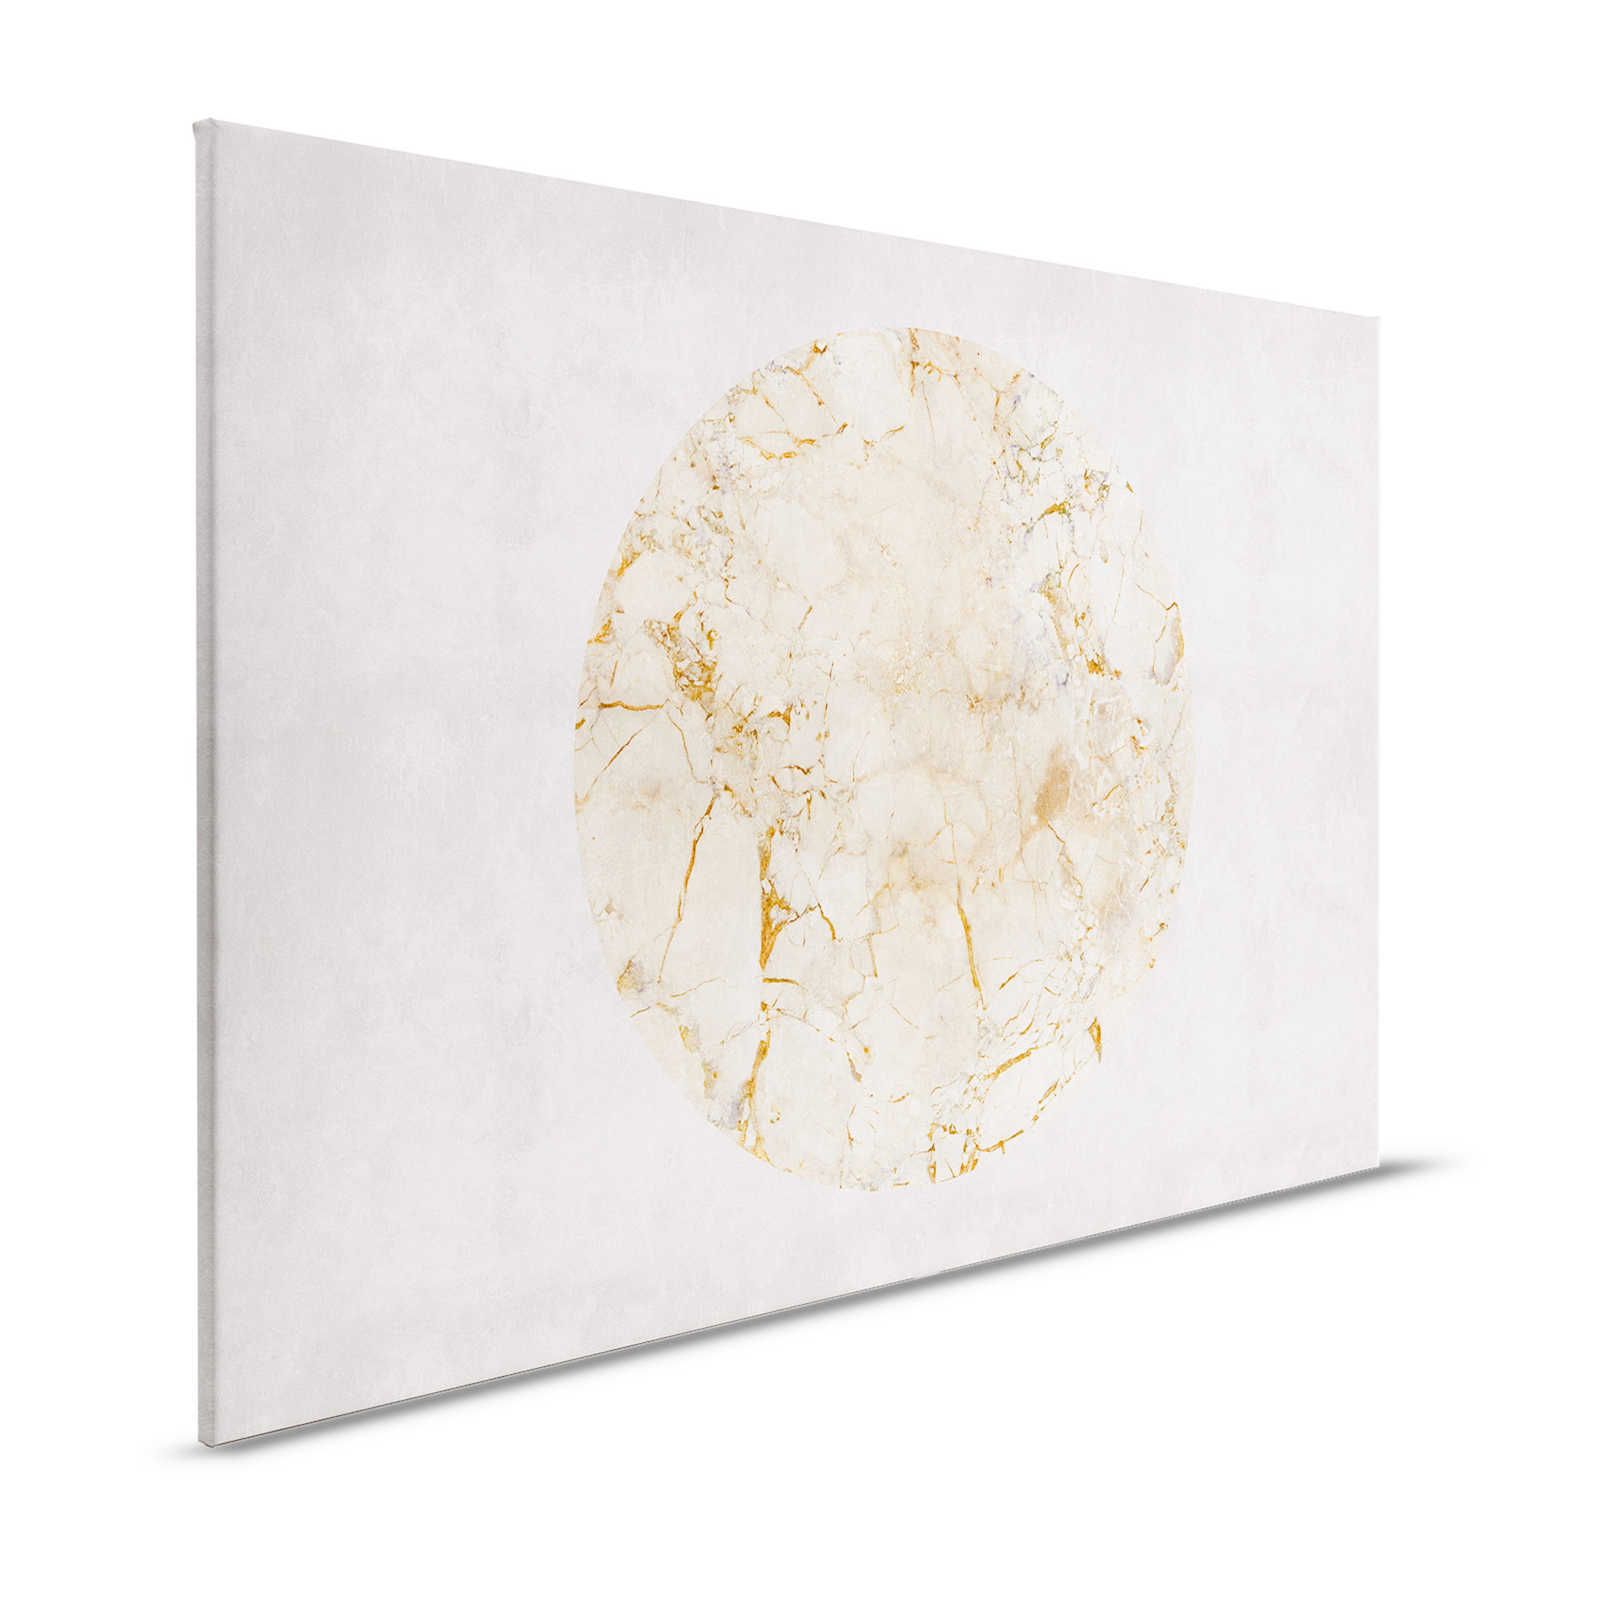 Venus 2 - Marbre toile or motif & aspect pierre - 1,20 m x 0,80 m
